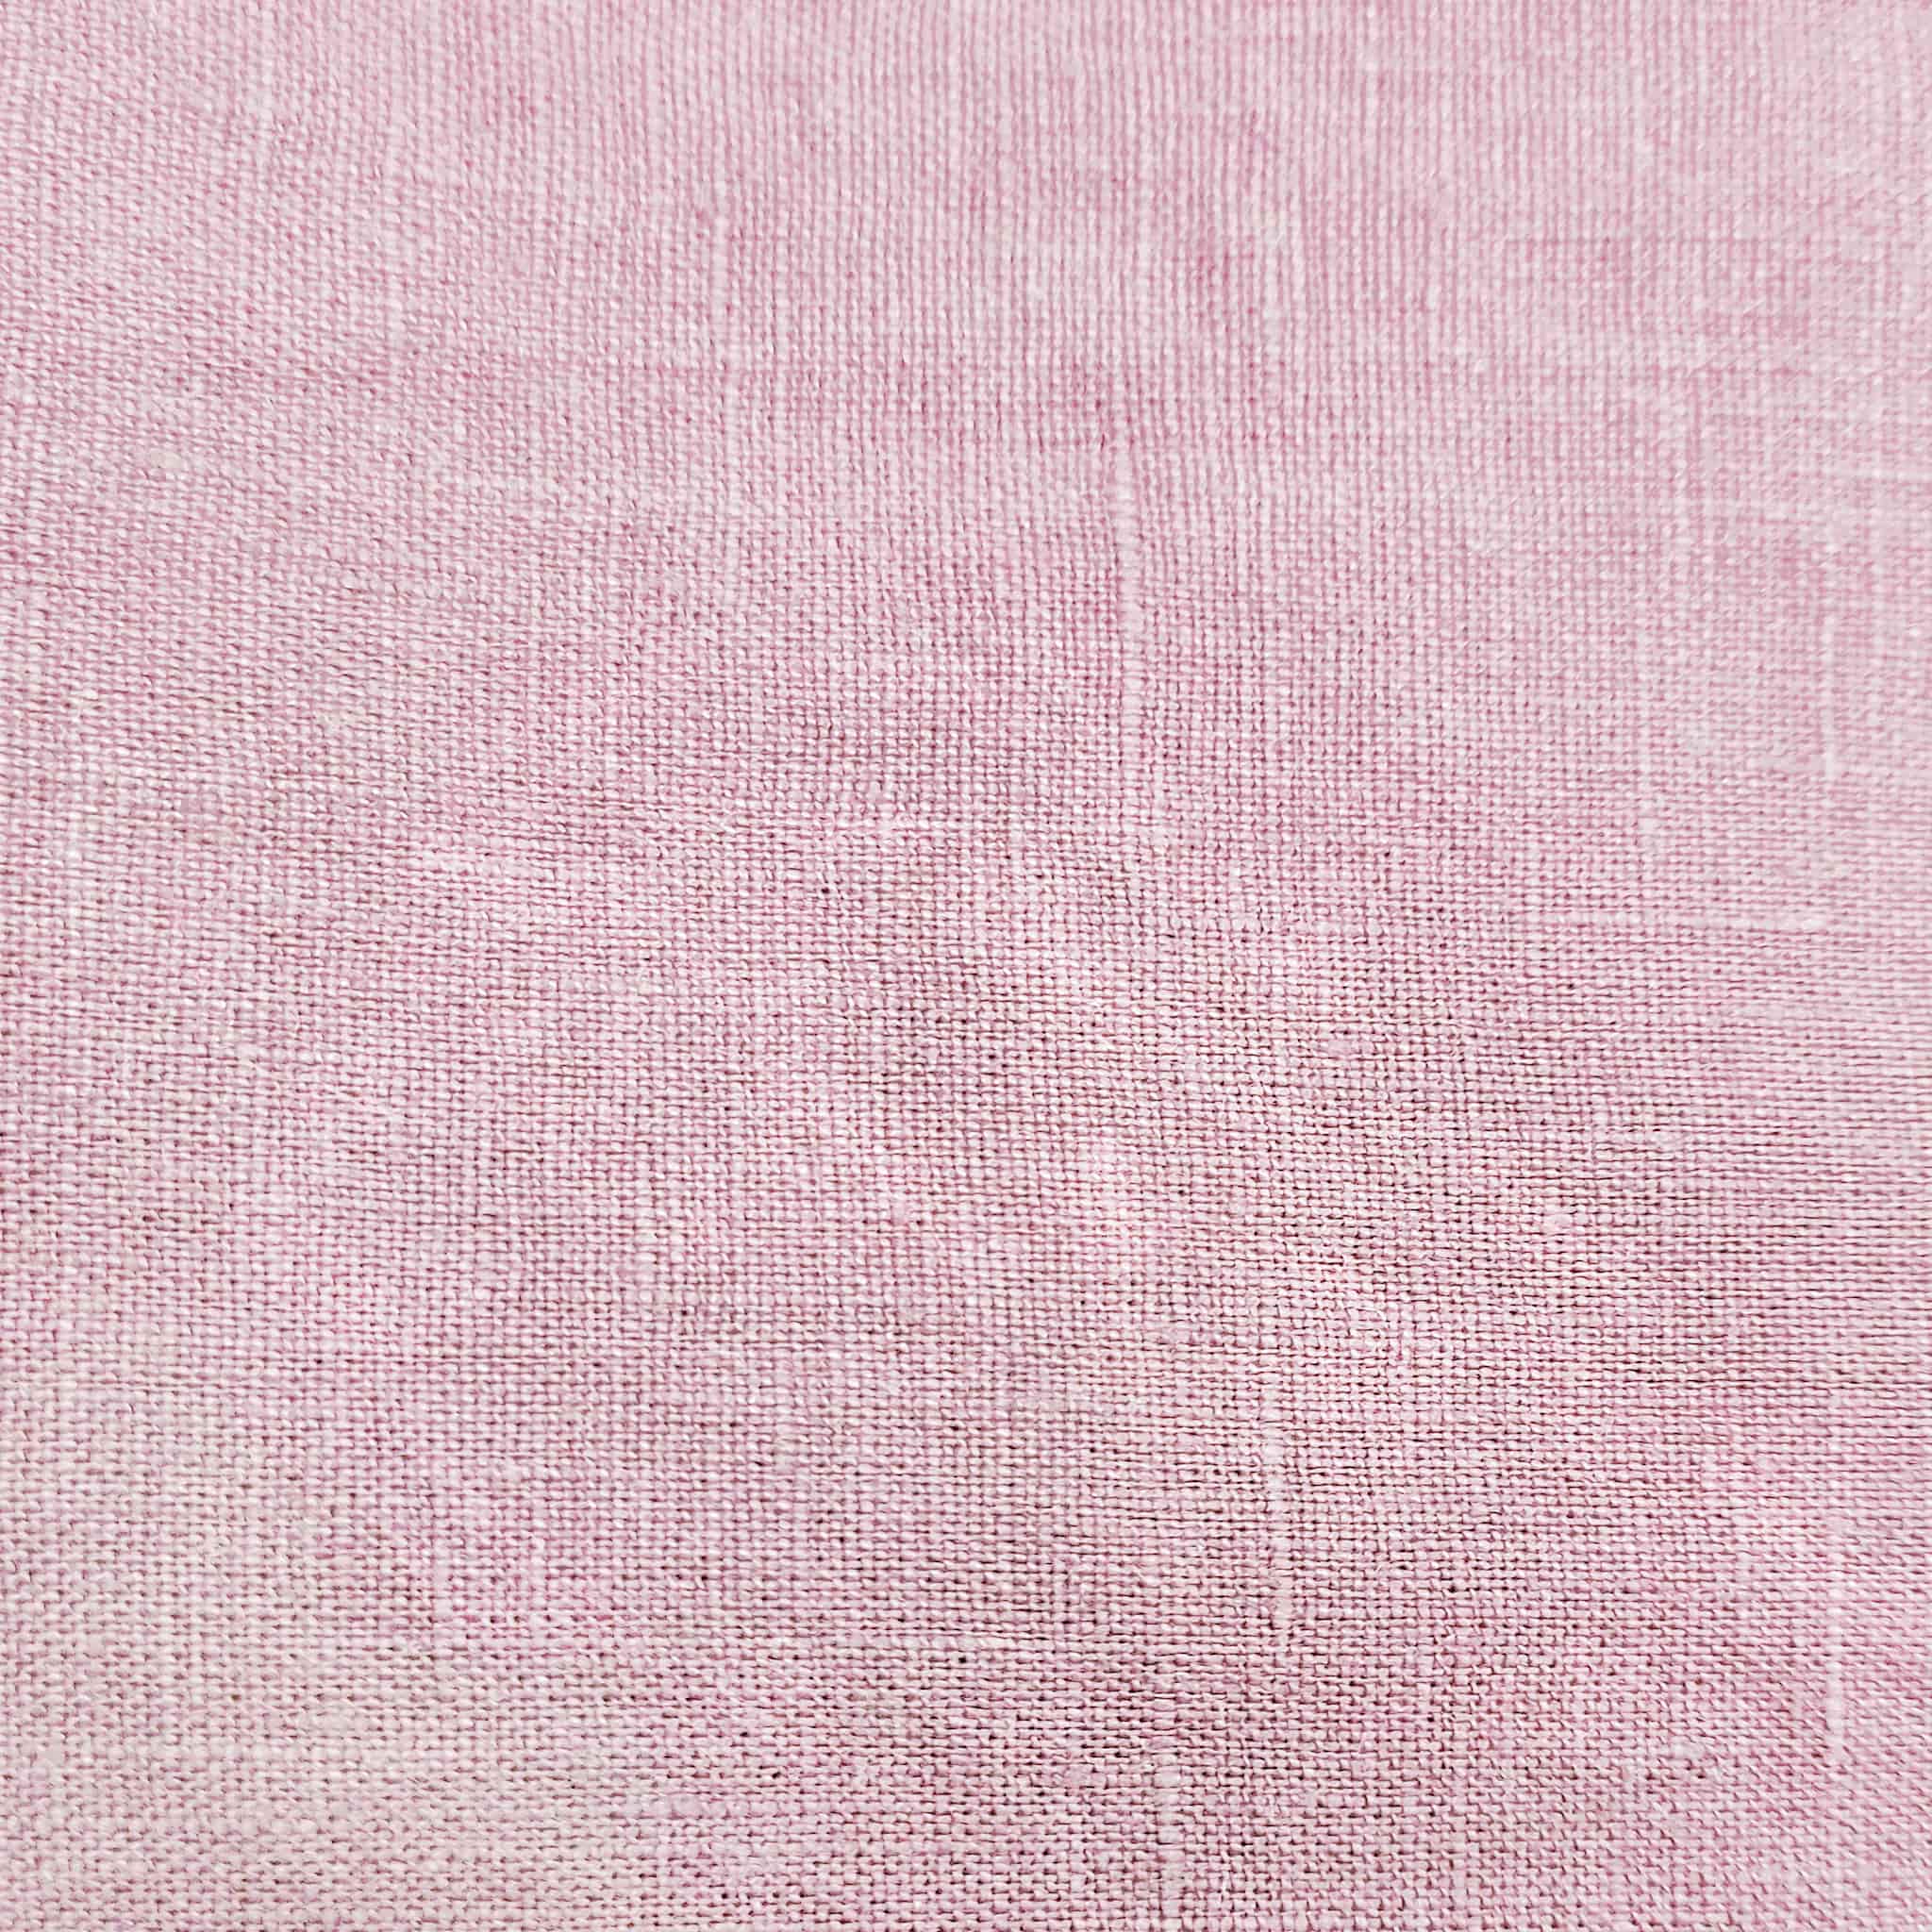 Soft Pink Linen Pillowcase Set